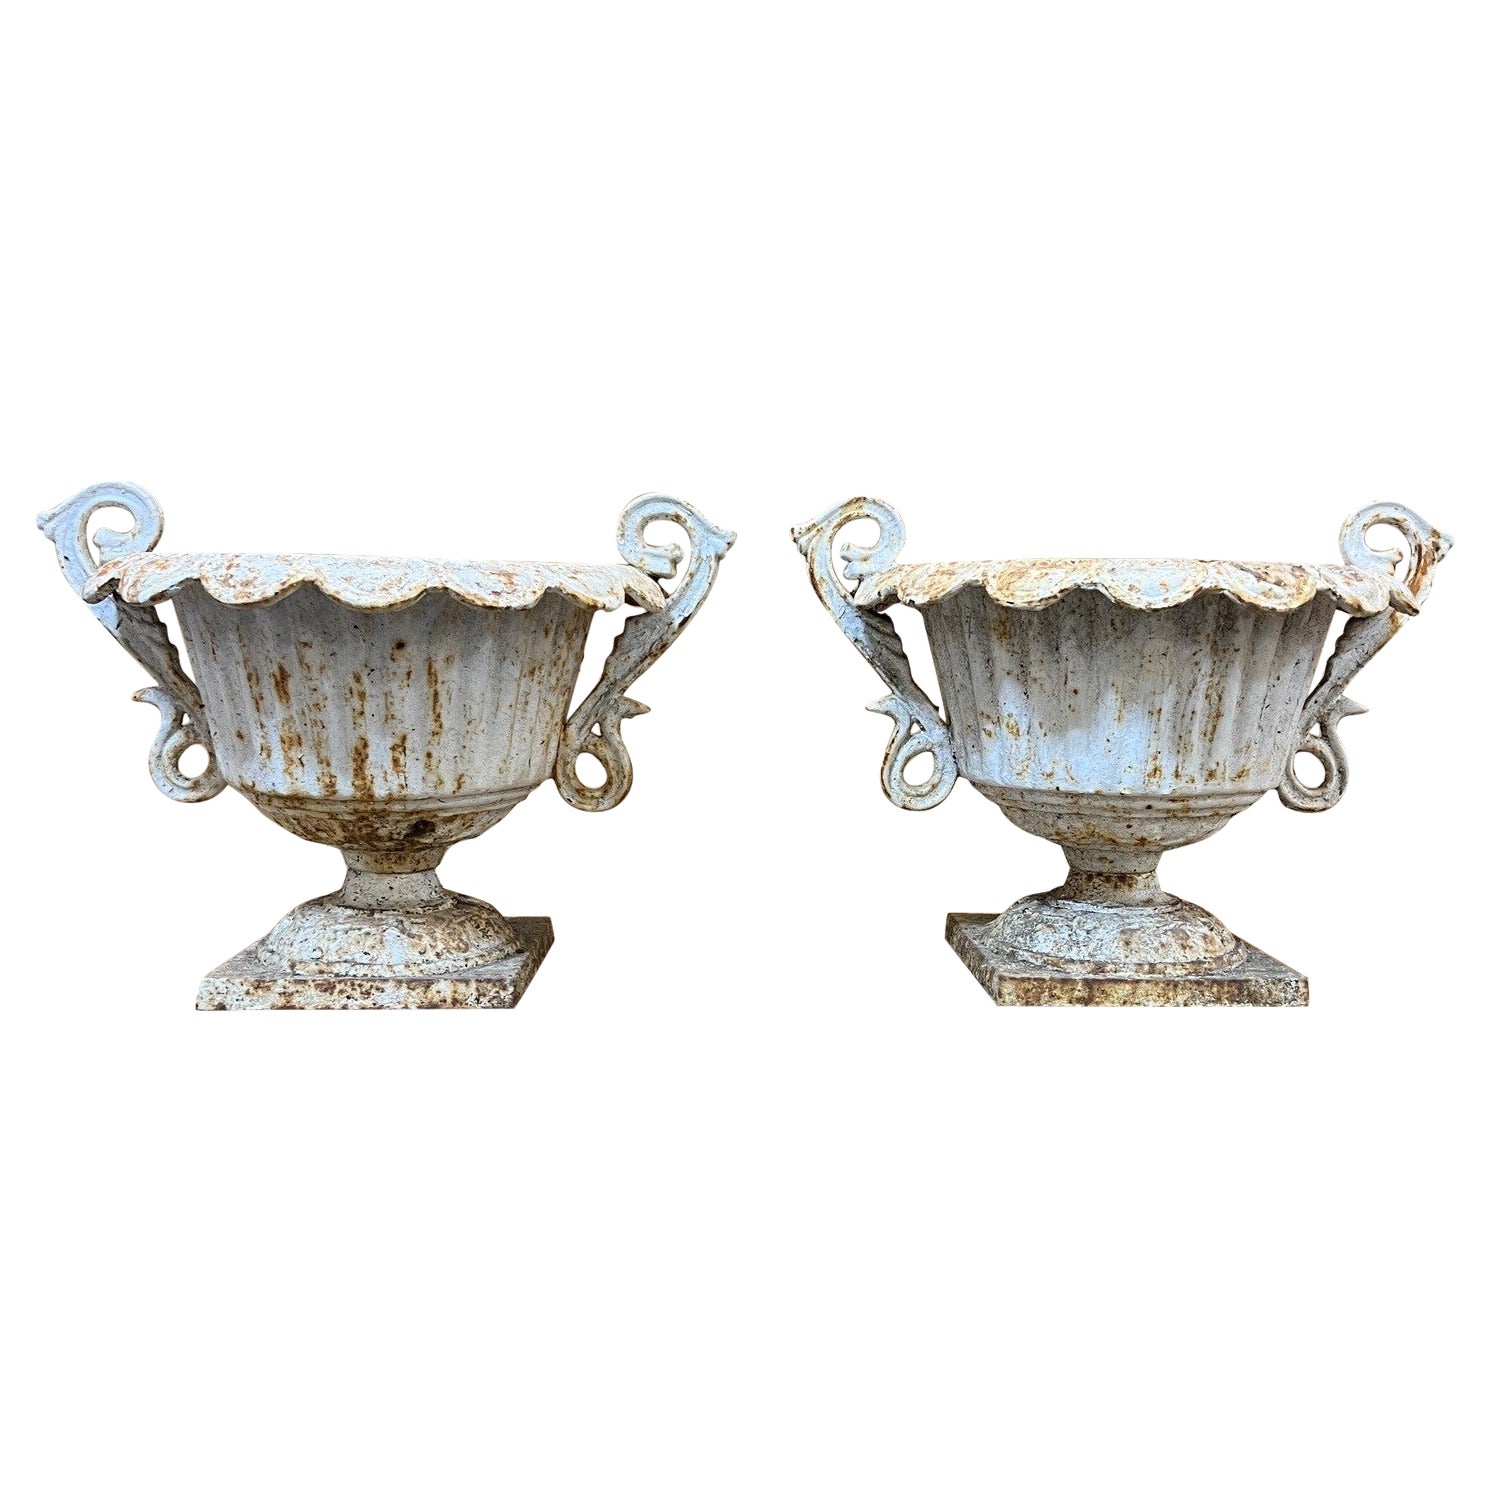 Petite paire d'urnes cannelées en fonte du milieu du 20e siècle avec poignées décoratives